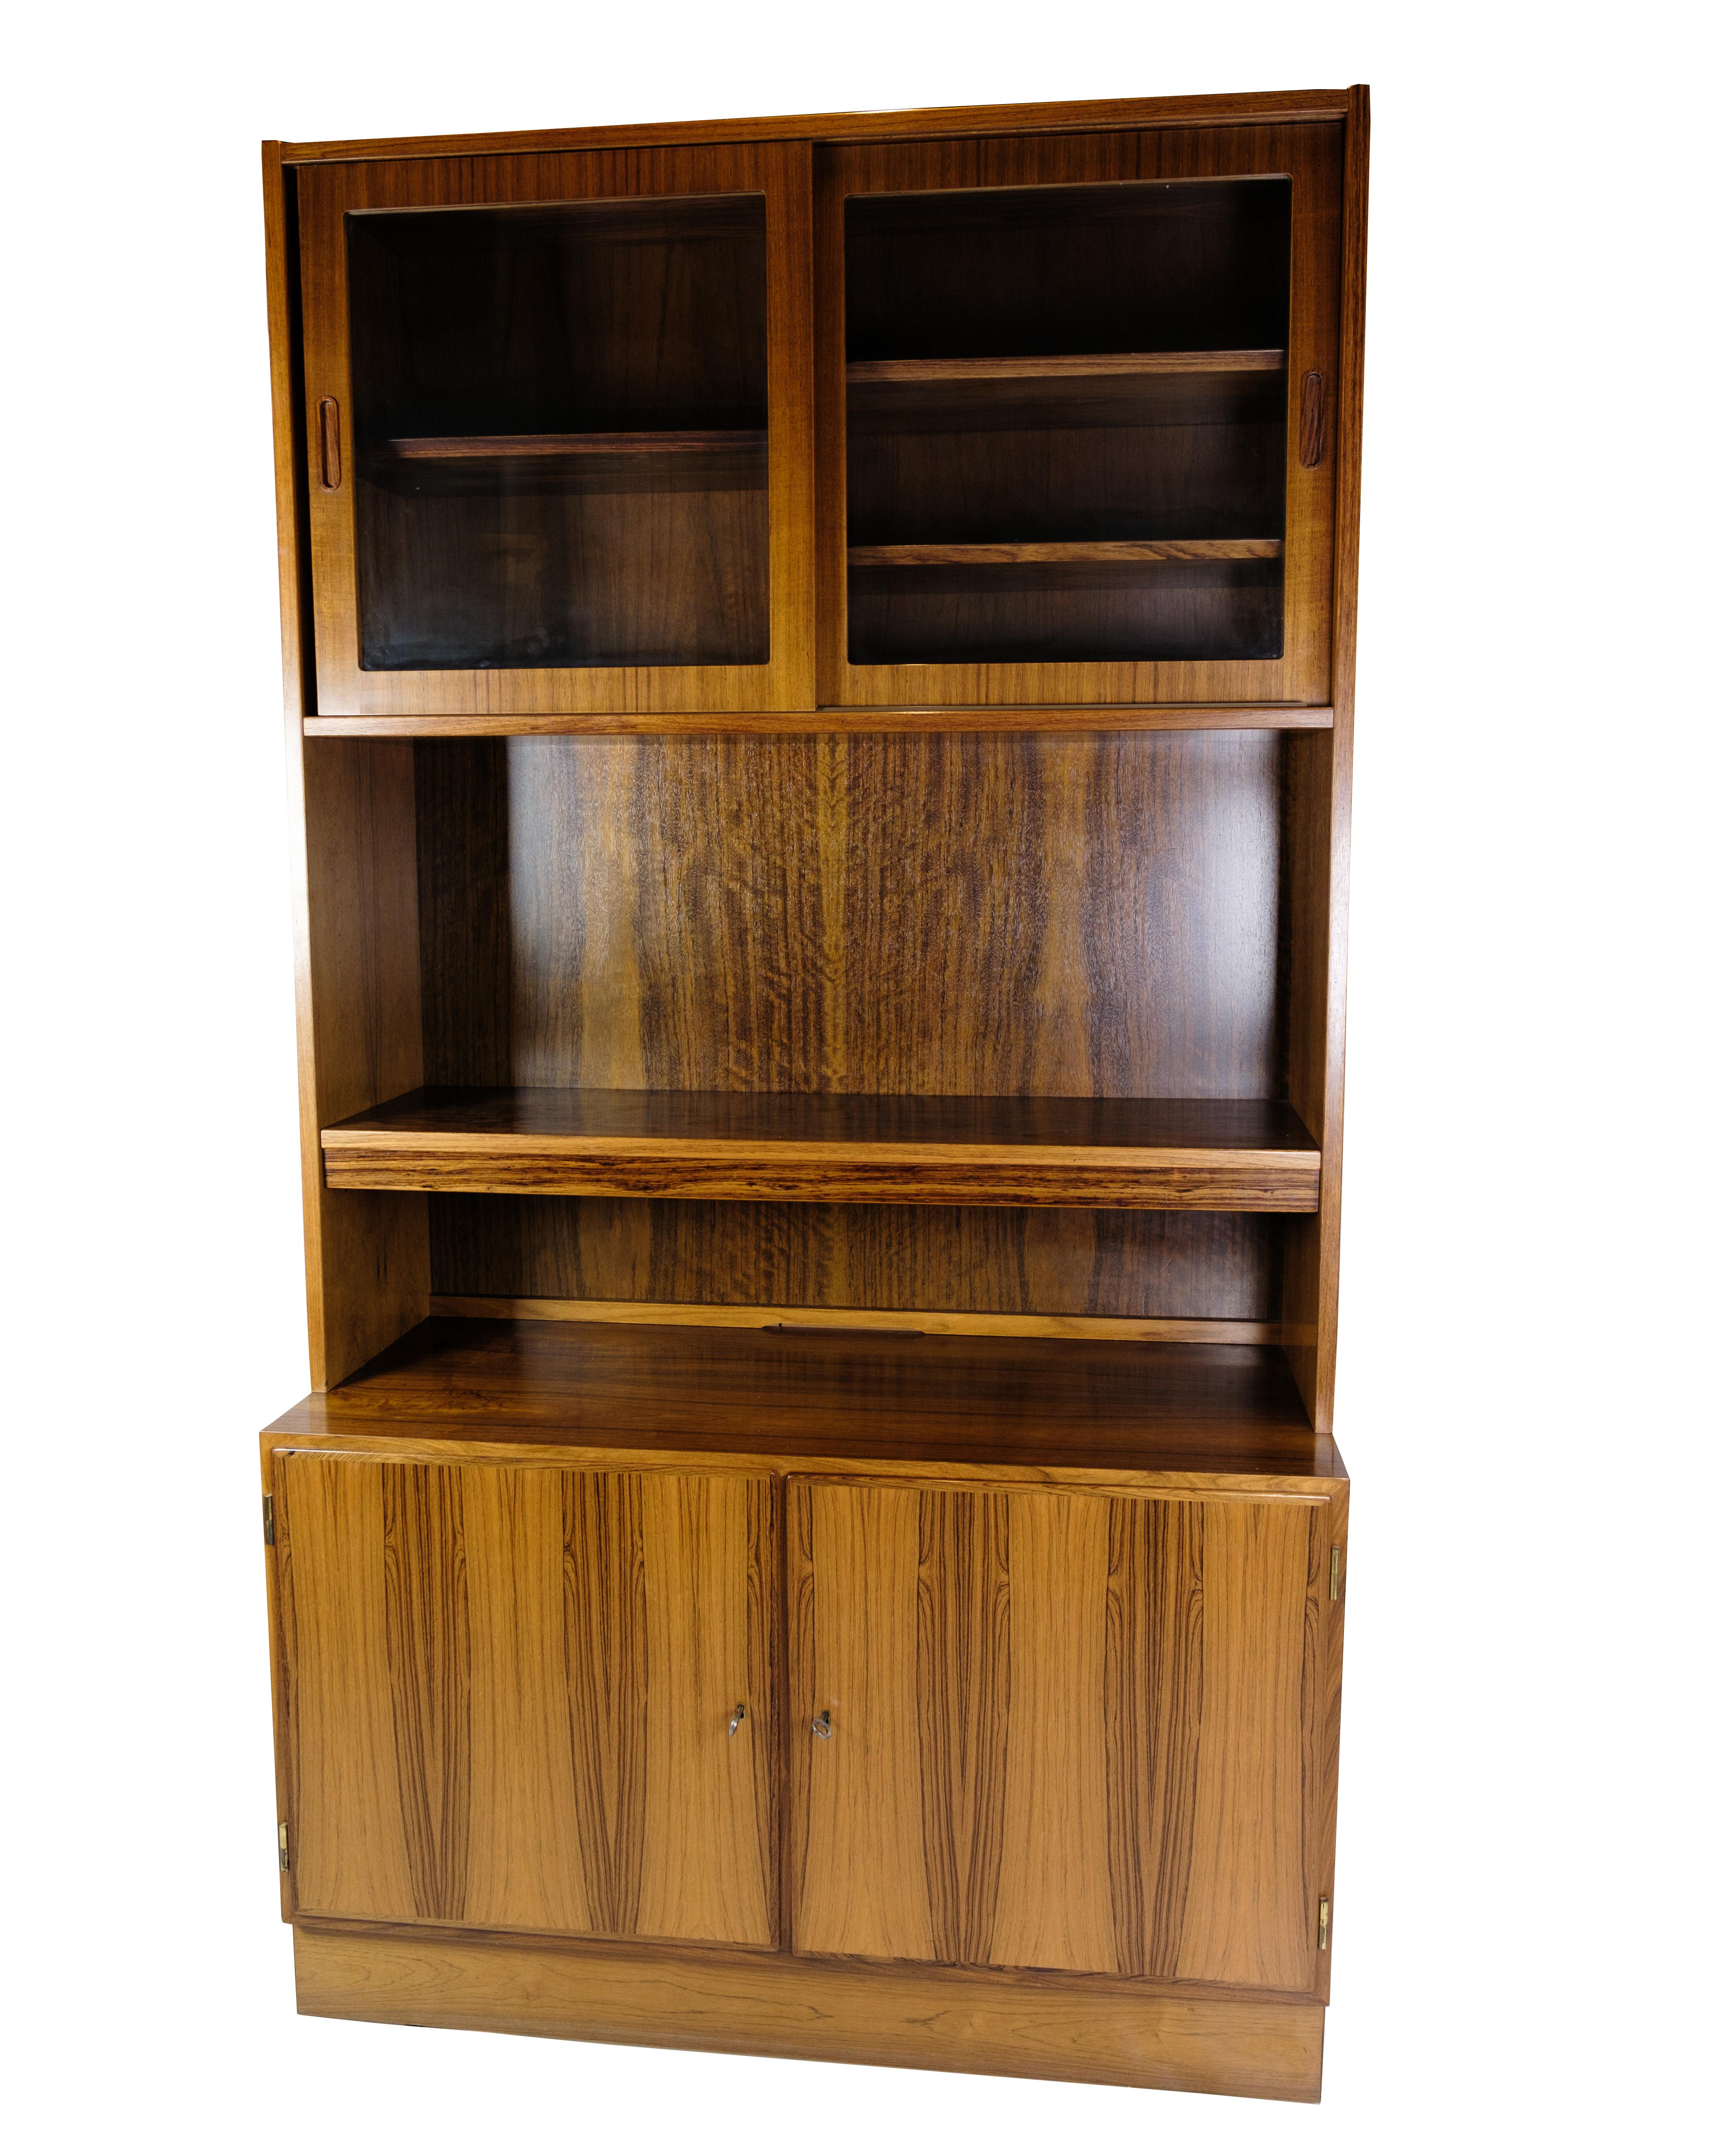 Cette bibliothèque en bois de rose de Hundevad est un exemple impressionnant de mobilier danois des années 1960. Hundevad, fabricant de meubles réputé pour sa haute qualité et son design intemporel, est à l'origine de ce meuble.

Fabriquée en bois